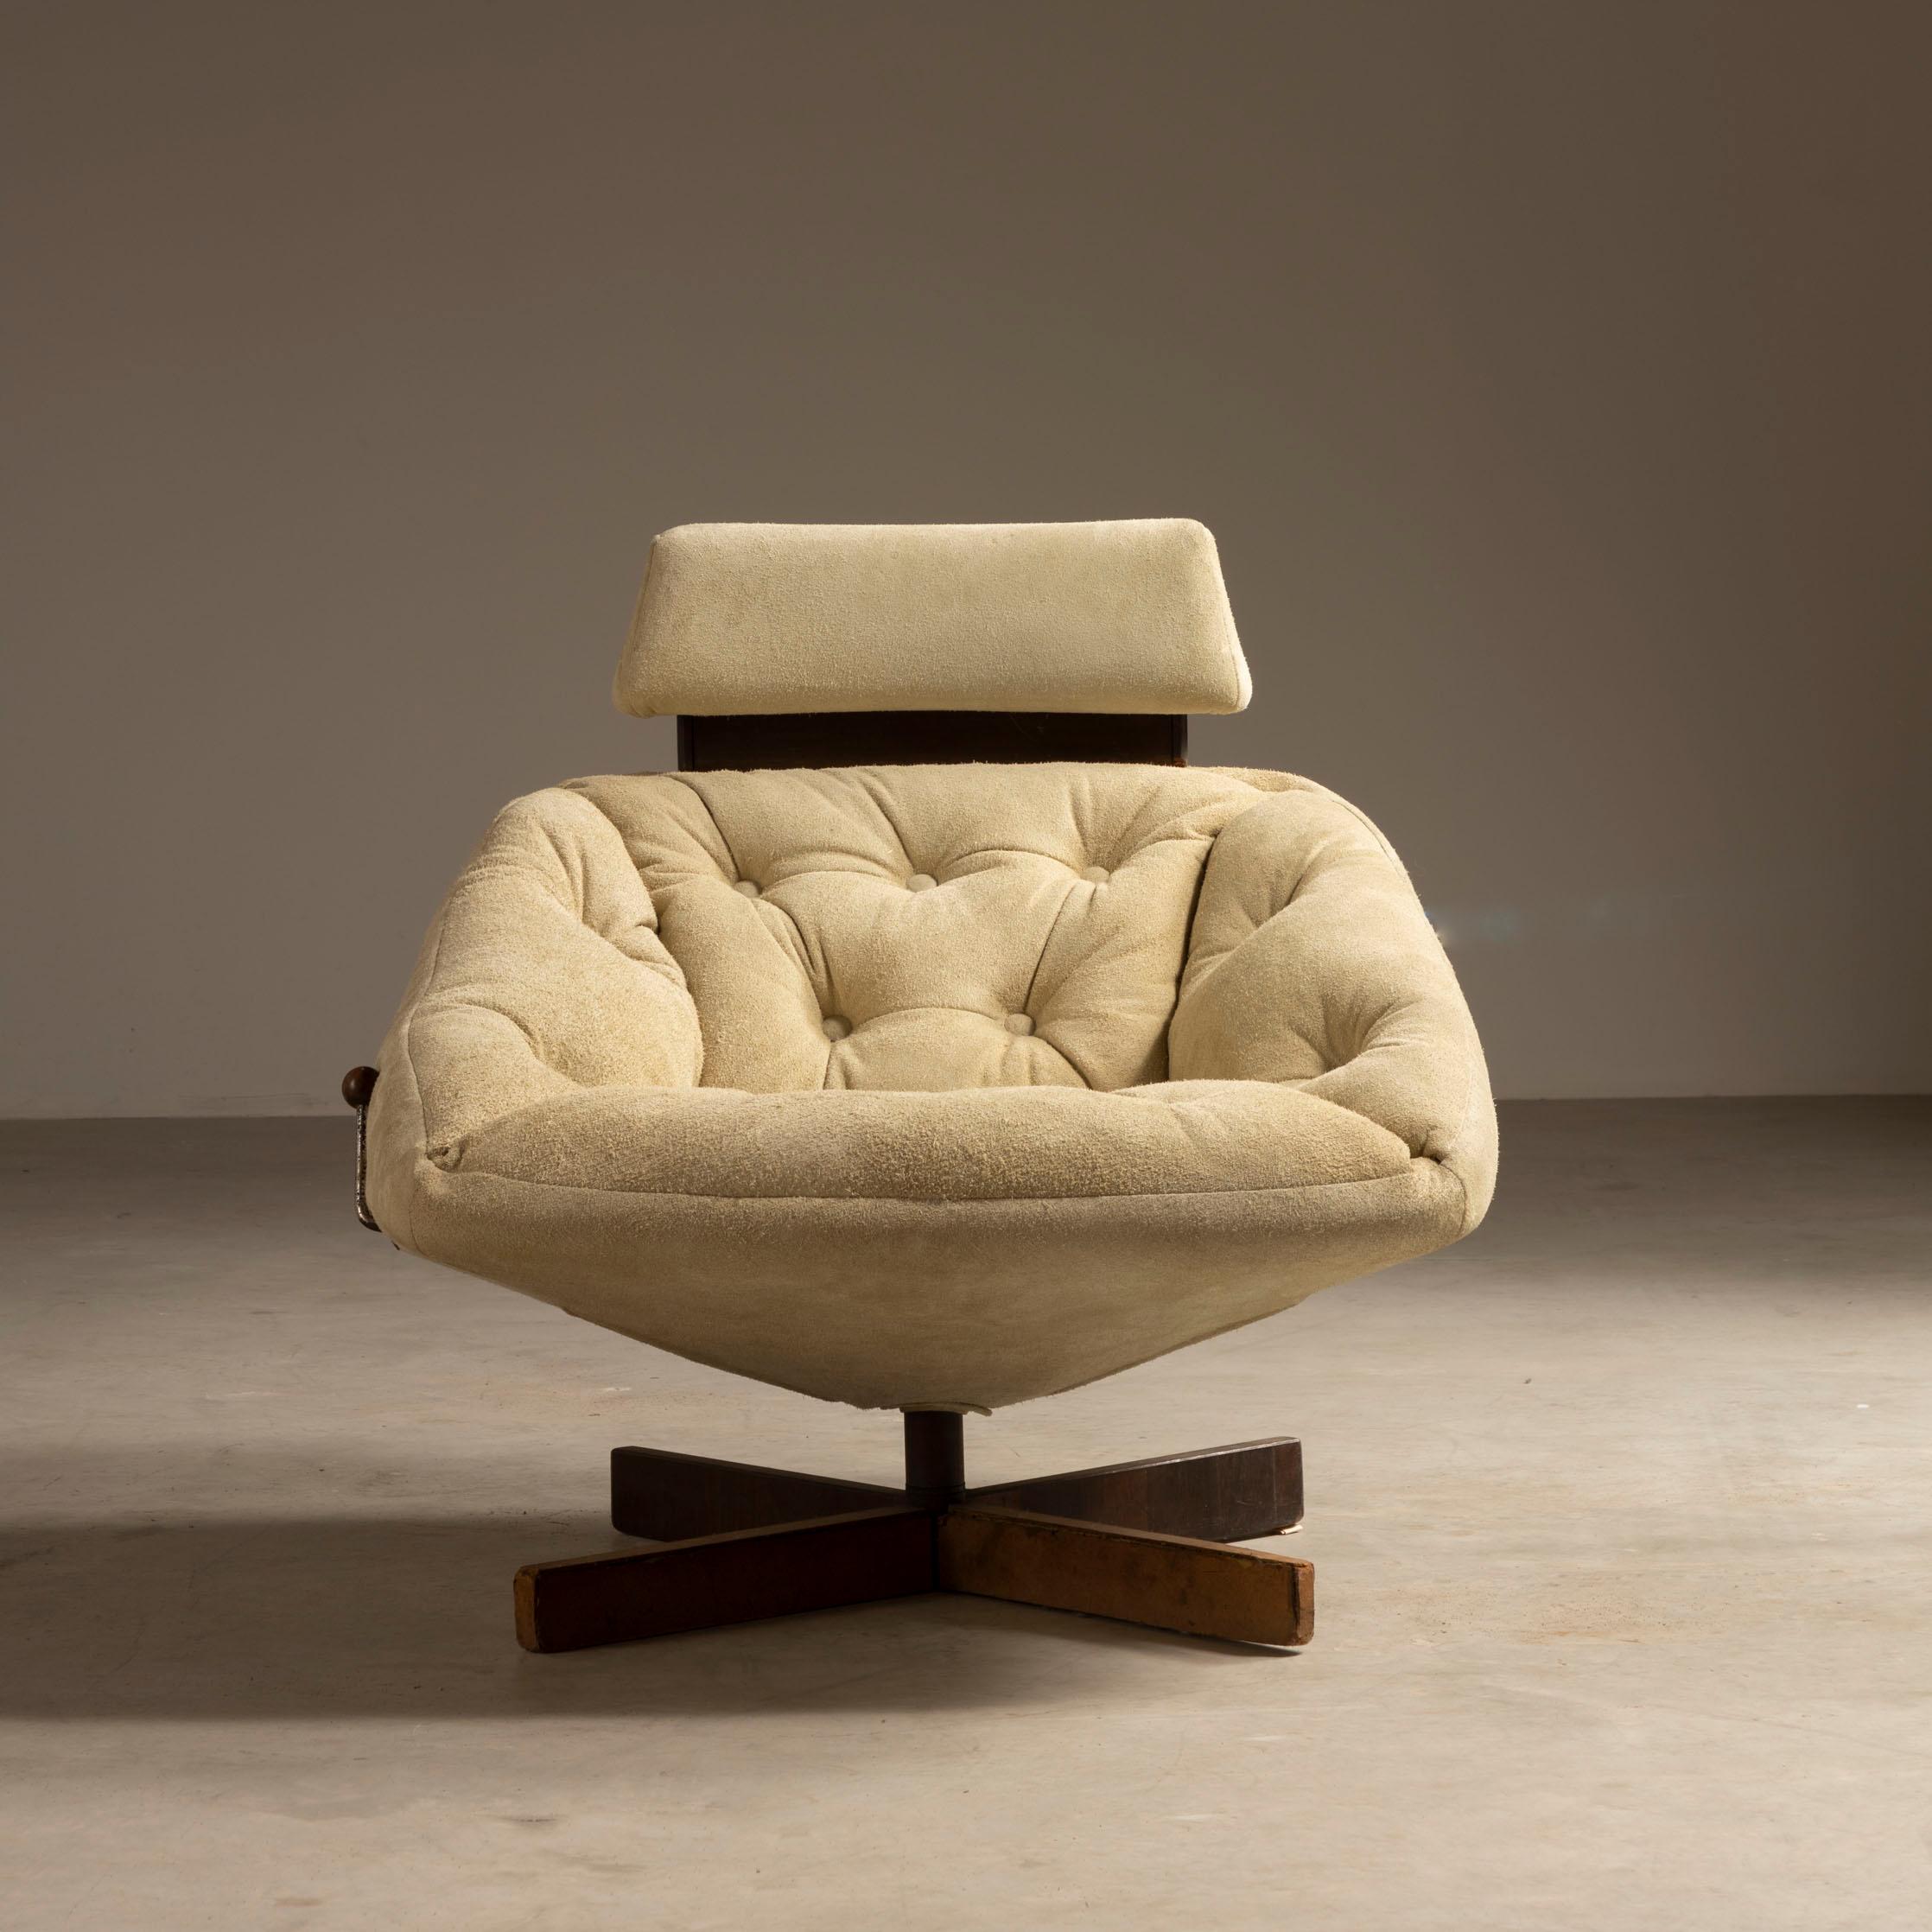 Le rare fauteuil MP-43, fabriqué en bois dur brésilien, est un autre grand exemple de la production imaginative et innovante du designer et architecte Percival Lafer. 

Avec son levier chromé qui permet de relever ou d'abaisser l'appui-tête, le